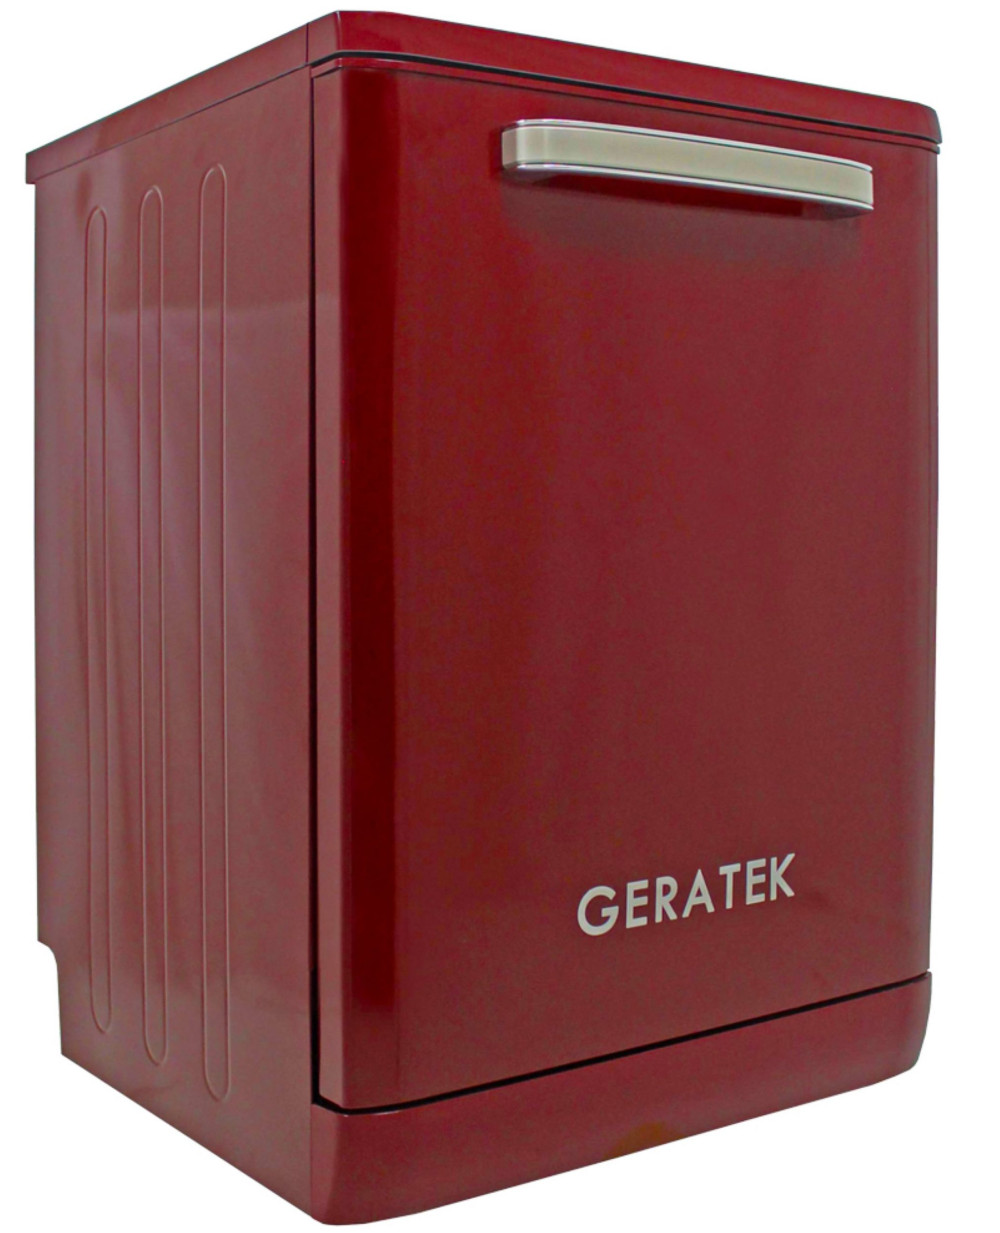 Geratek GS6200WR szépséghibás bordó színű 12 terítékes retro mosogatógép